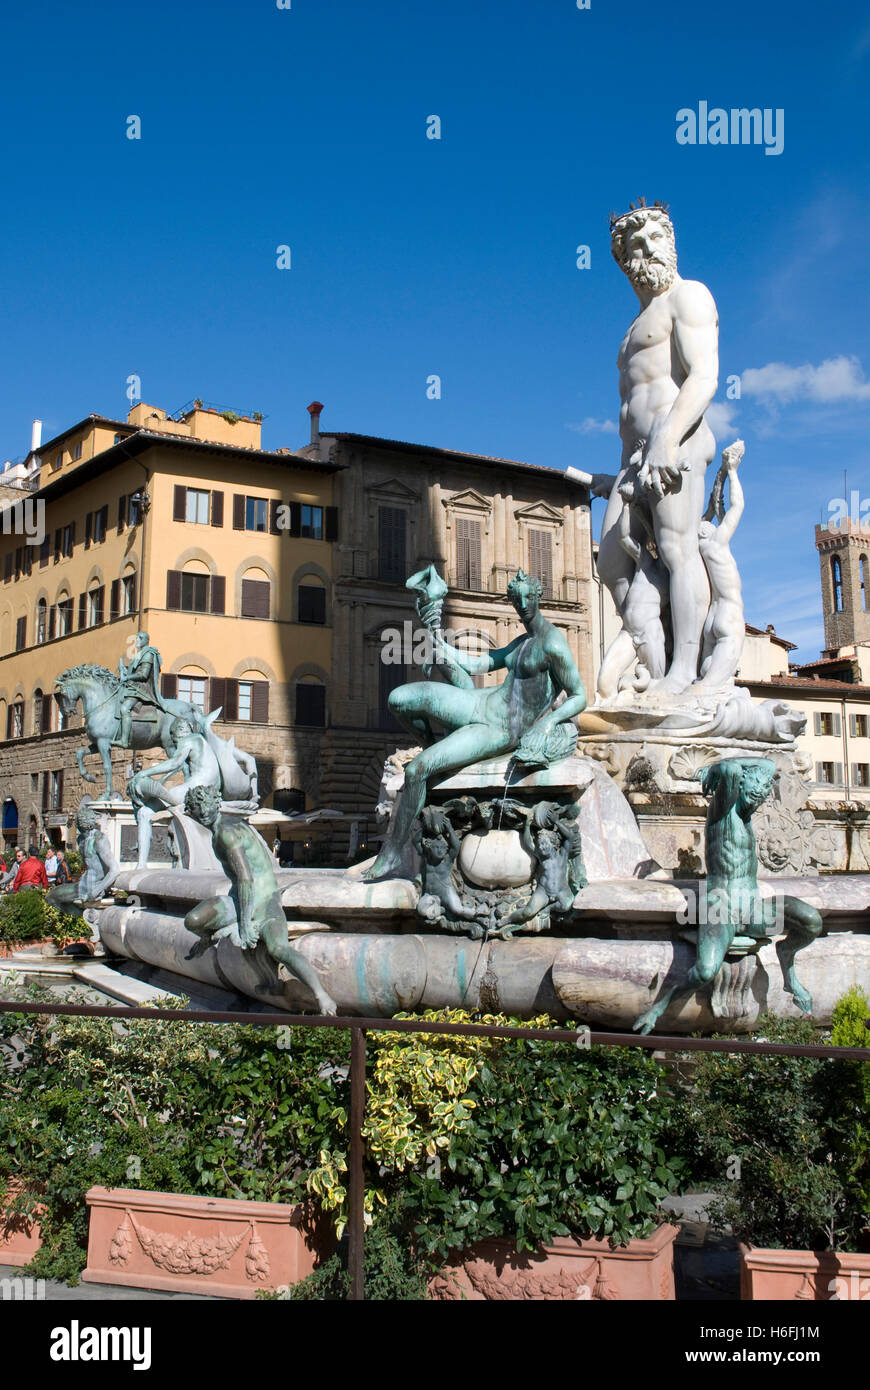 Fontaine de Neptune de la Piazza della Signoria, Florence, UNESCO World Heritage Site, Toscane, Italie, Europe Banque D'Images